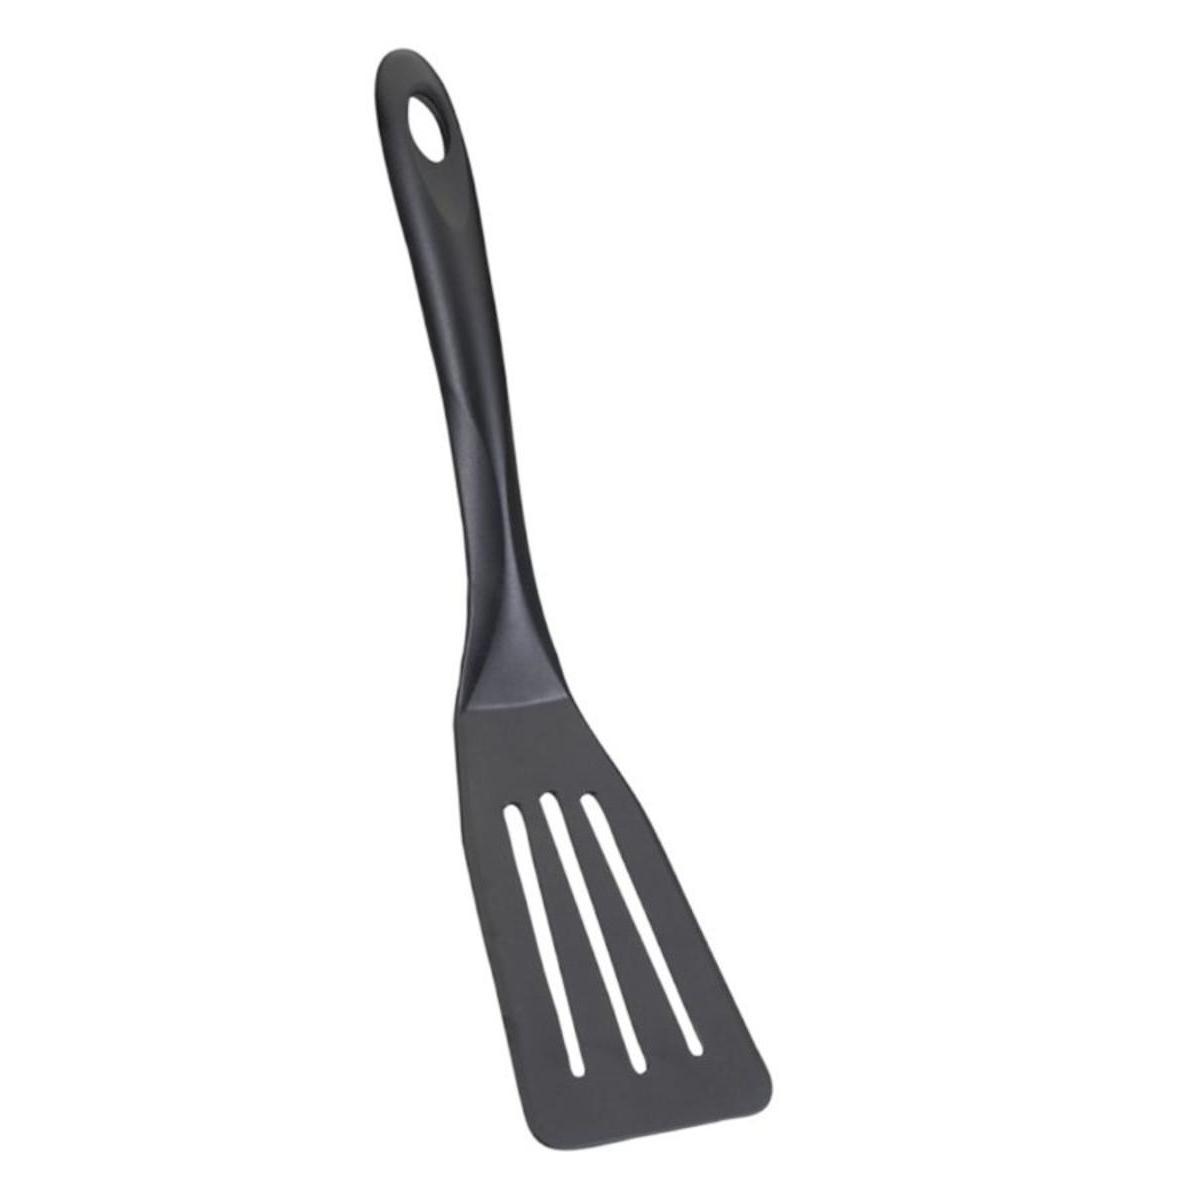 Large spatule - Fibre de verre - 32 x 7,5 x 5,5 cm - Noir